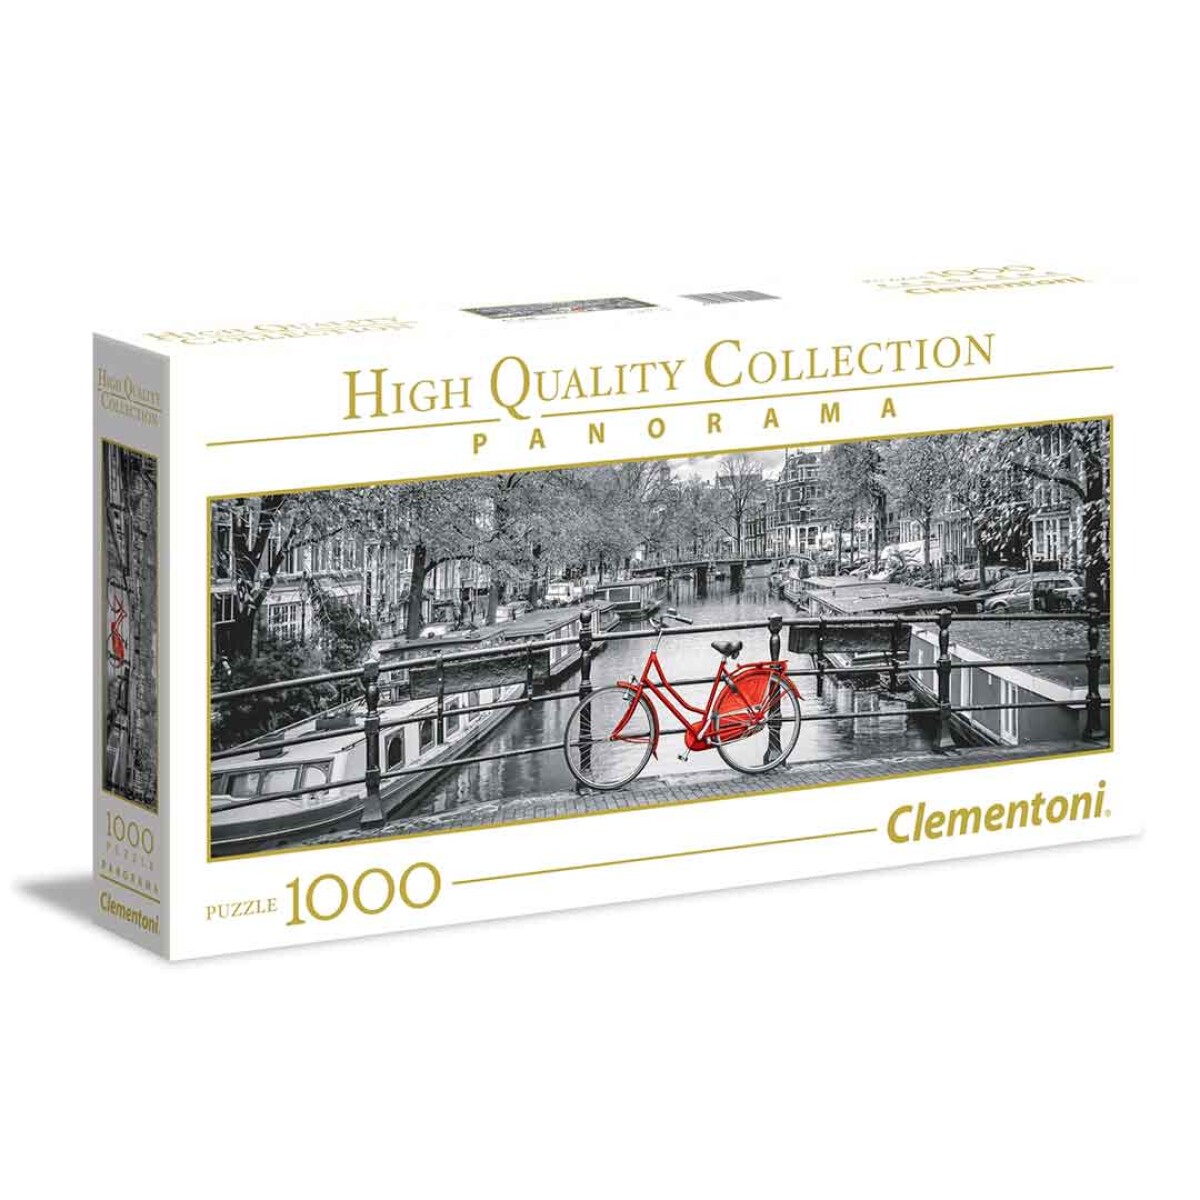 Puzzle Clementoni 1000 piezas Amsterdam High Quality Cole - 001 